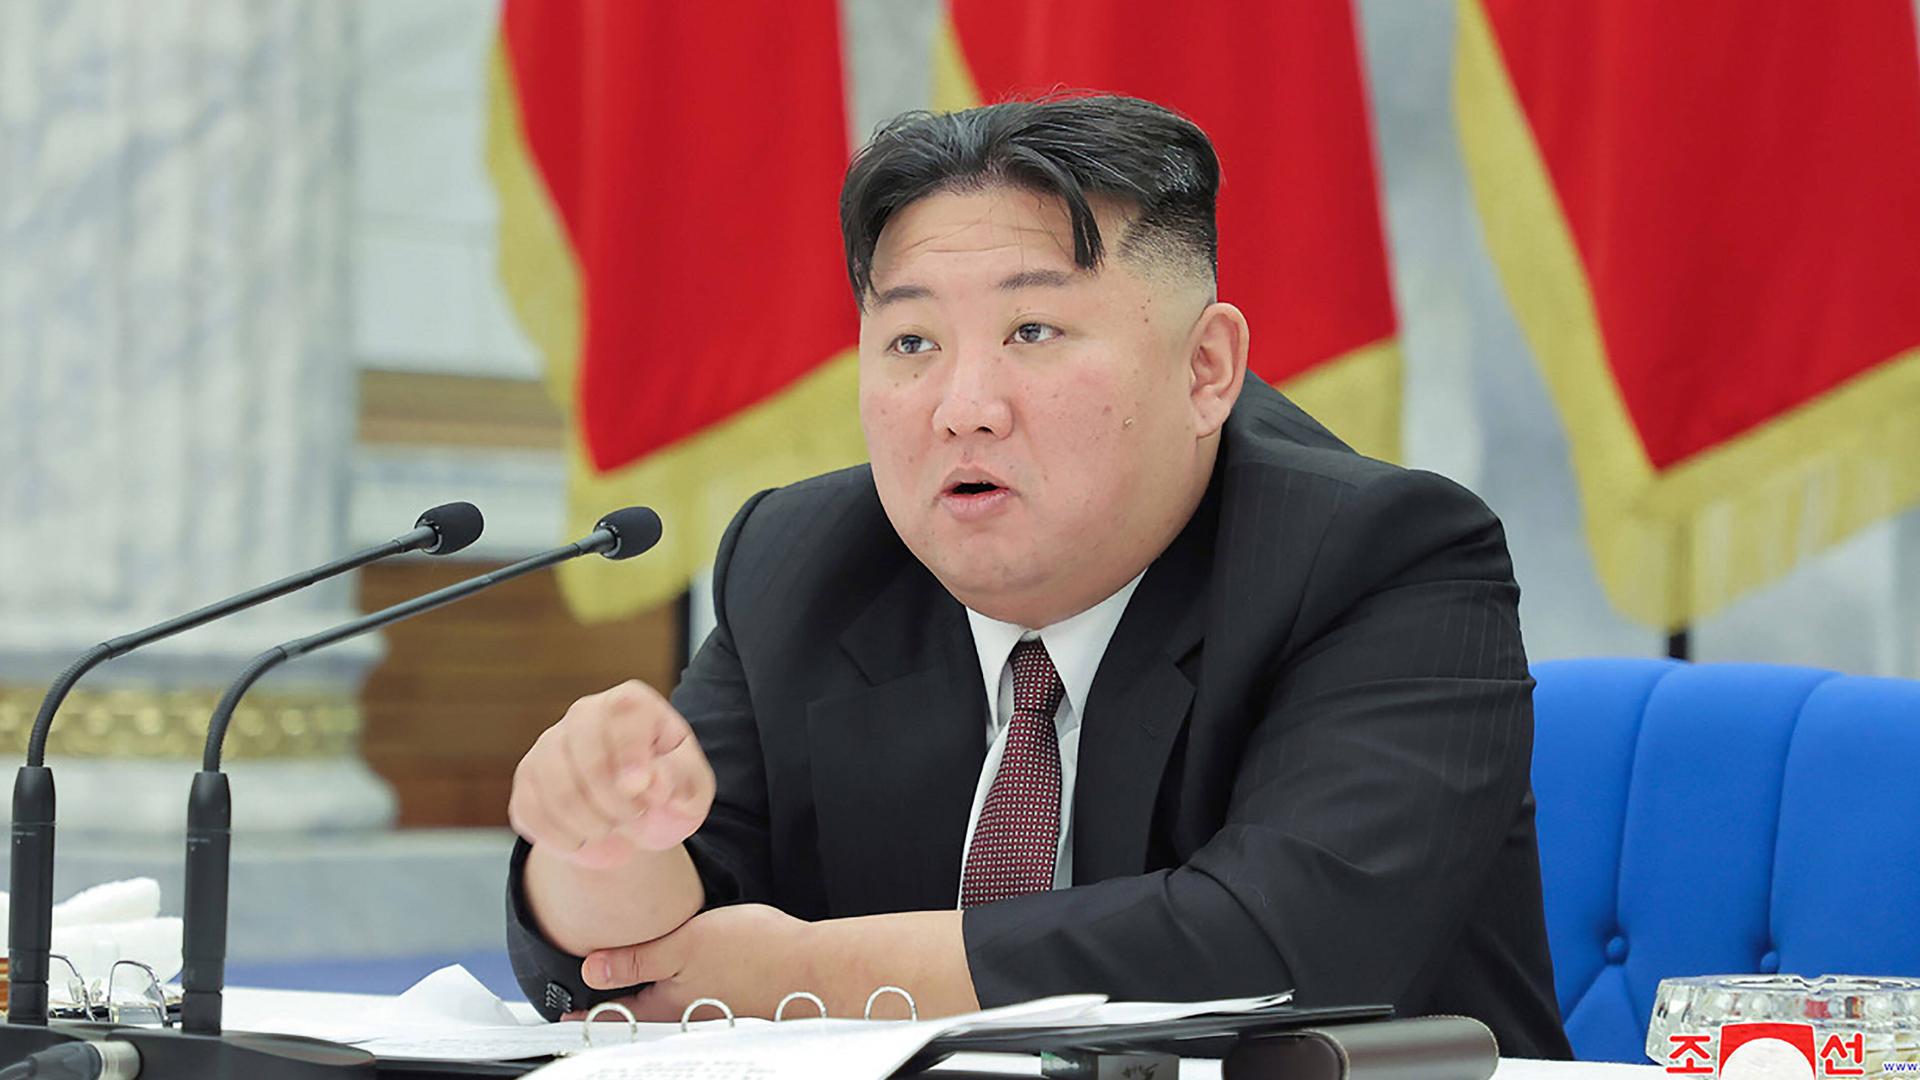 Das Bild zeigt wie der nordkoreanische Führer Kim Jong-un während einer Sitzung der Arbeiterpartei Nordkoreas in der Parteizentrale in Pjöngjang spricht (30.12.2022)